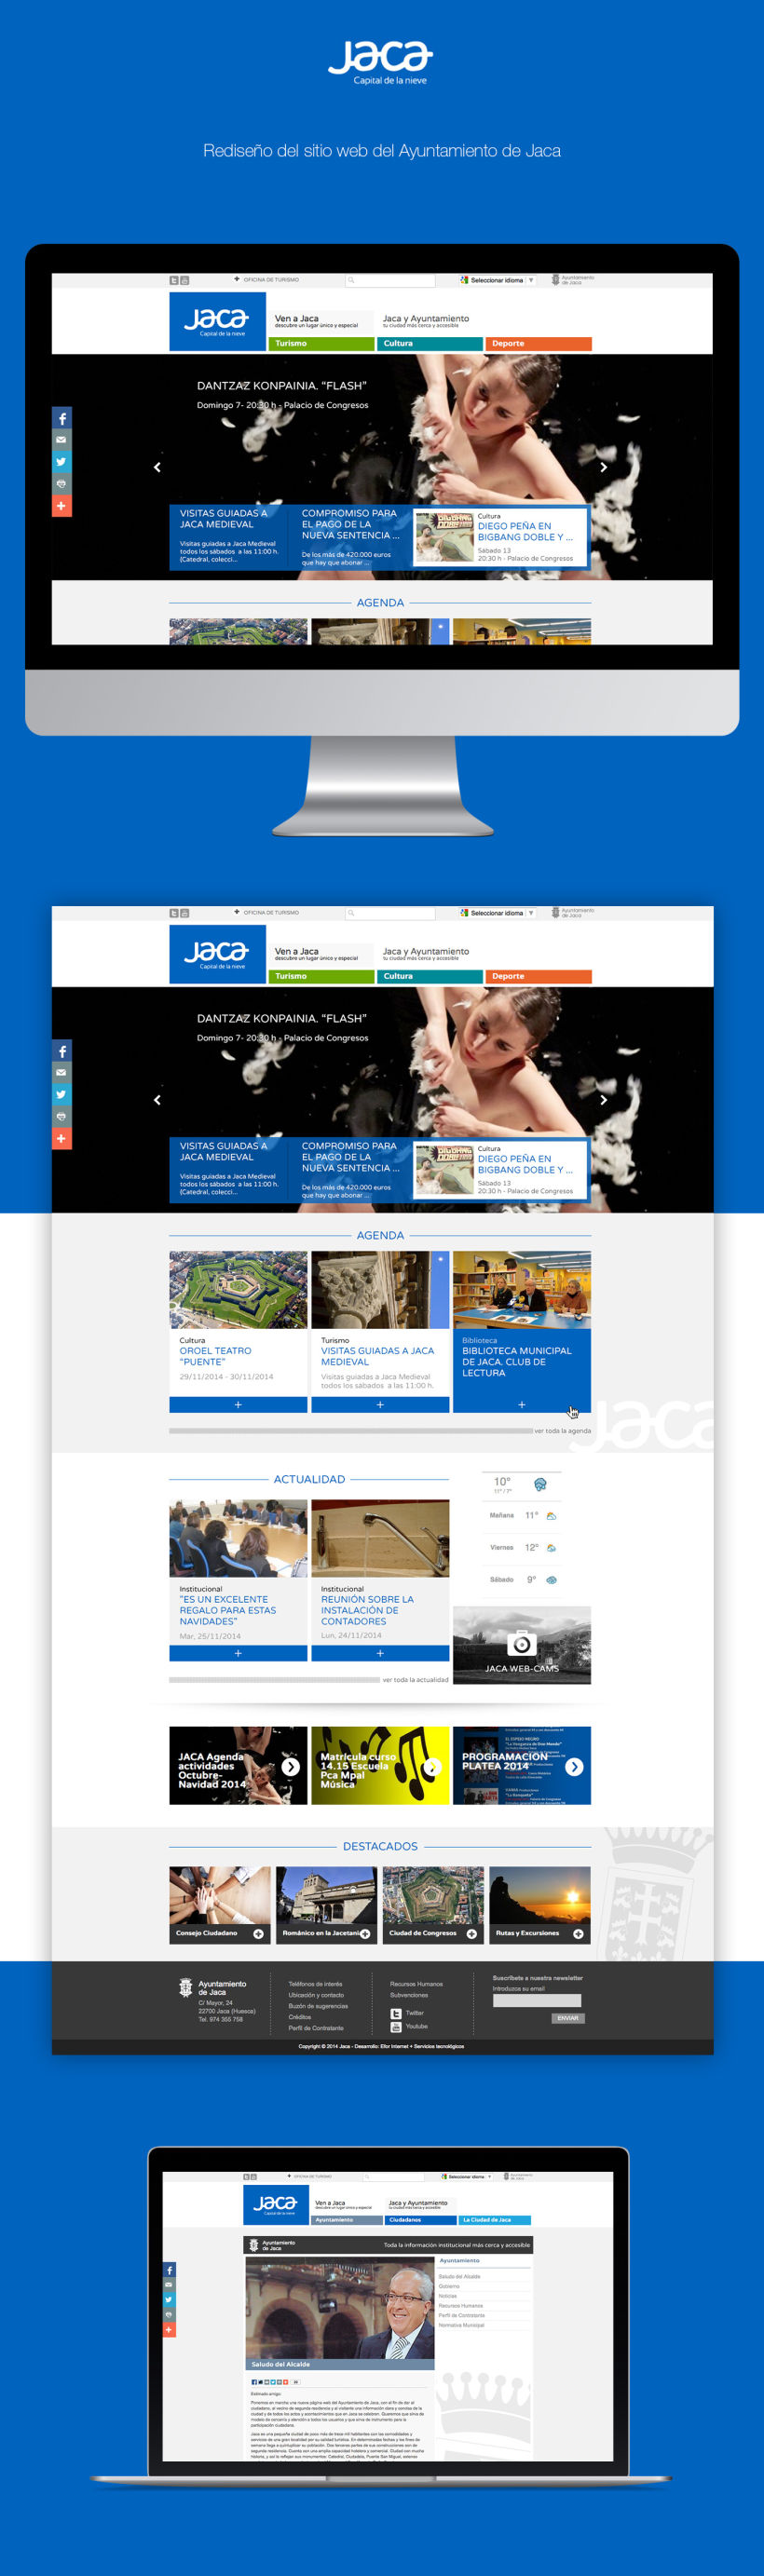 Ayuntamiento de Jaca | Website redesign -1